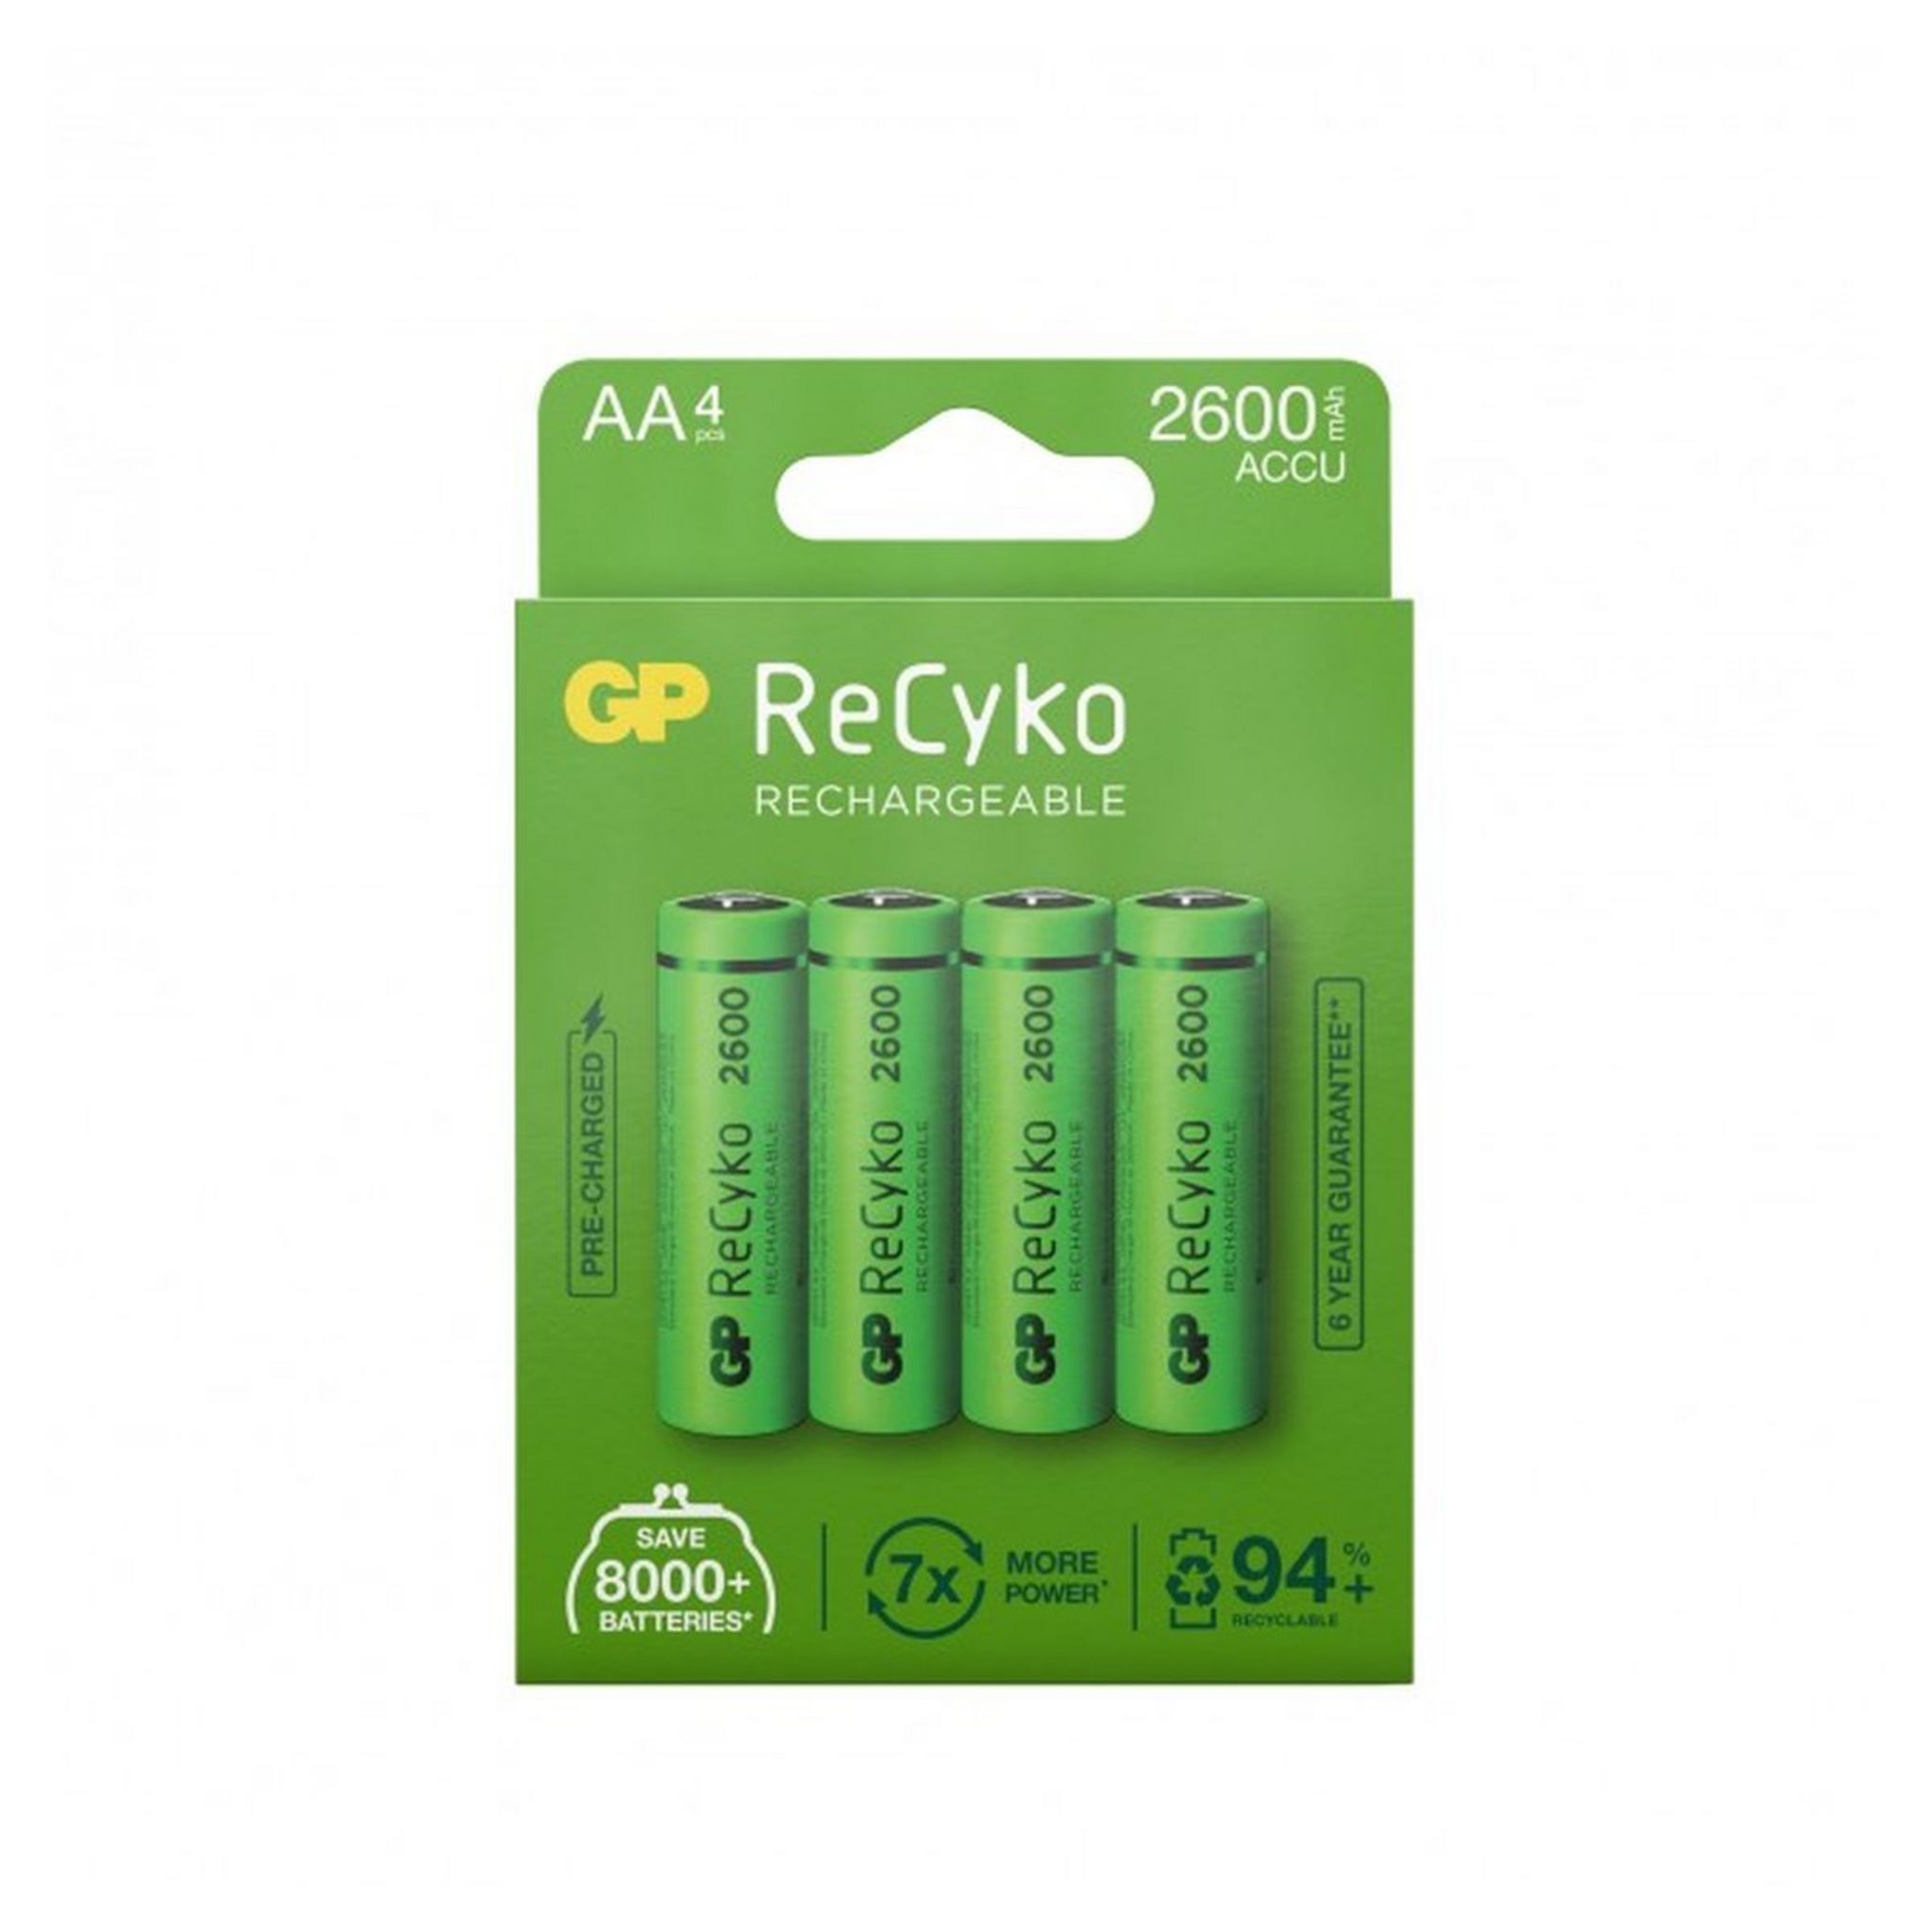 Lot de 4 Piles AA rechargeables Vert/Argenté - VOLKANO - VOL_VK_8102_GN 